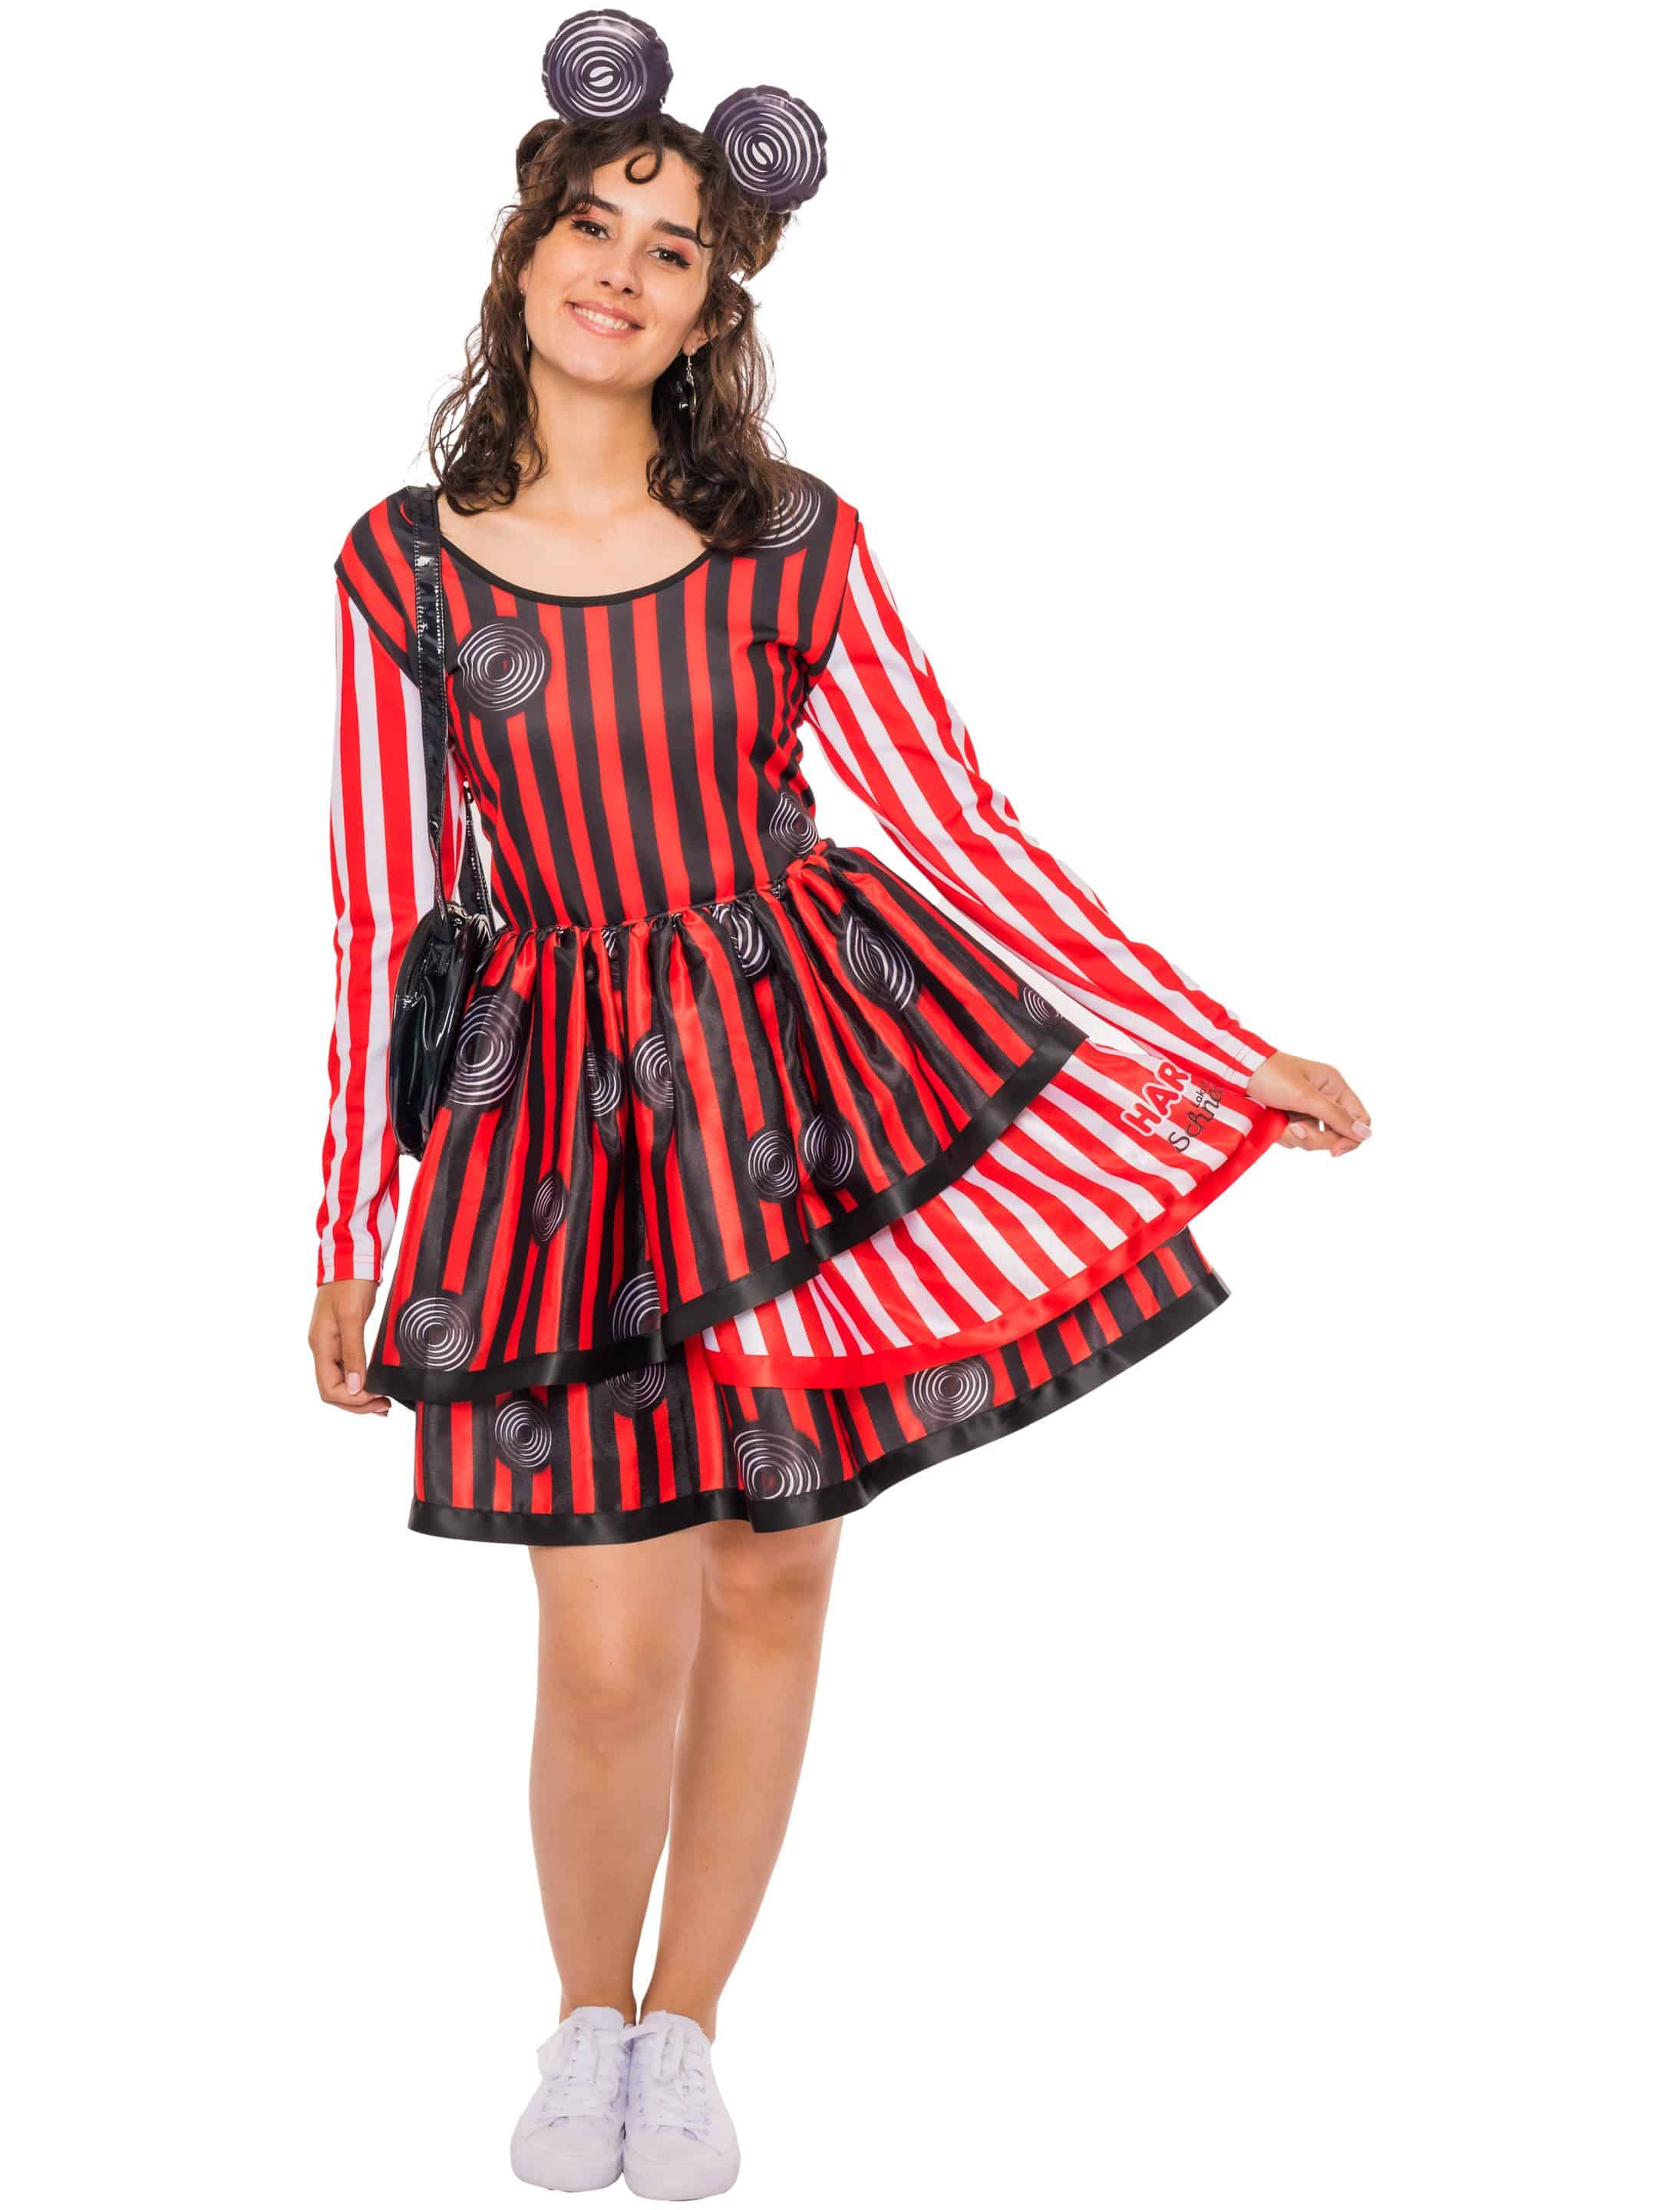 Kleid HARIBO Lakritz Schnecken Damen schwarz/weiß/rot L